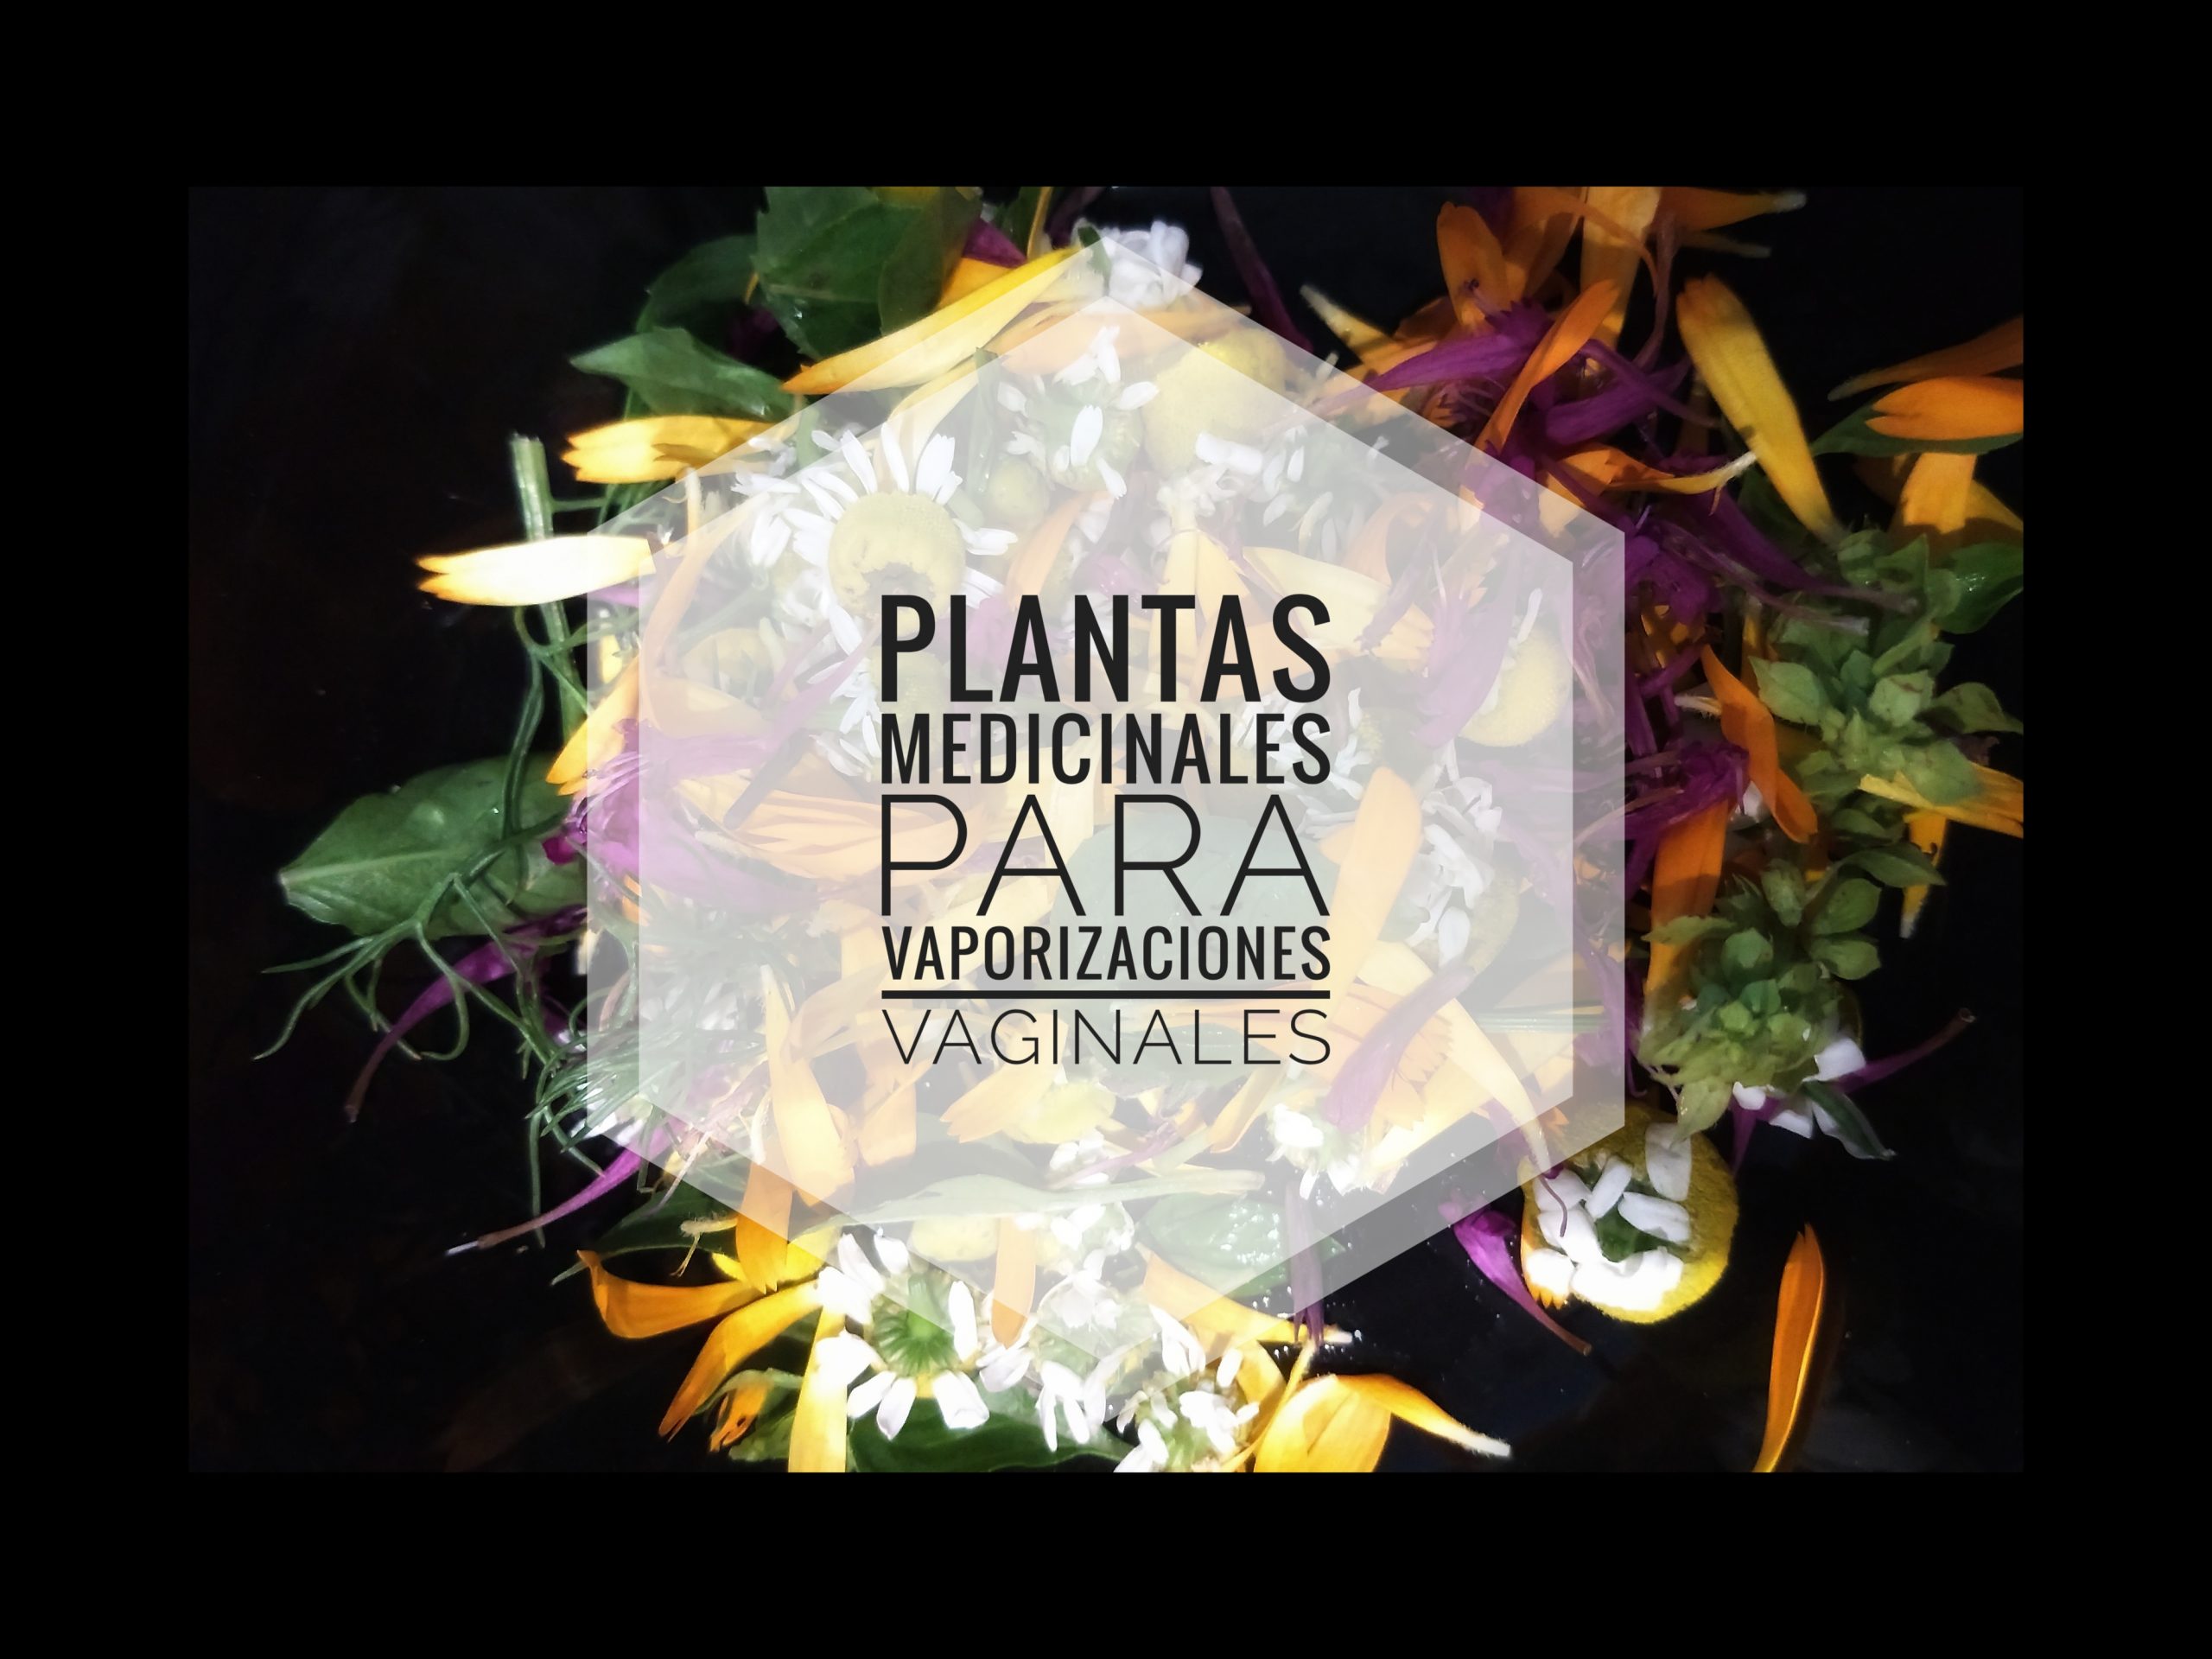 Plantas medicinales para vaporizaciones vaginales – Lila Guerrero